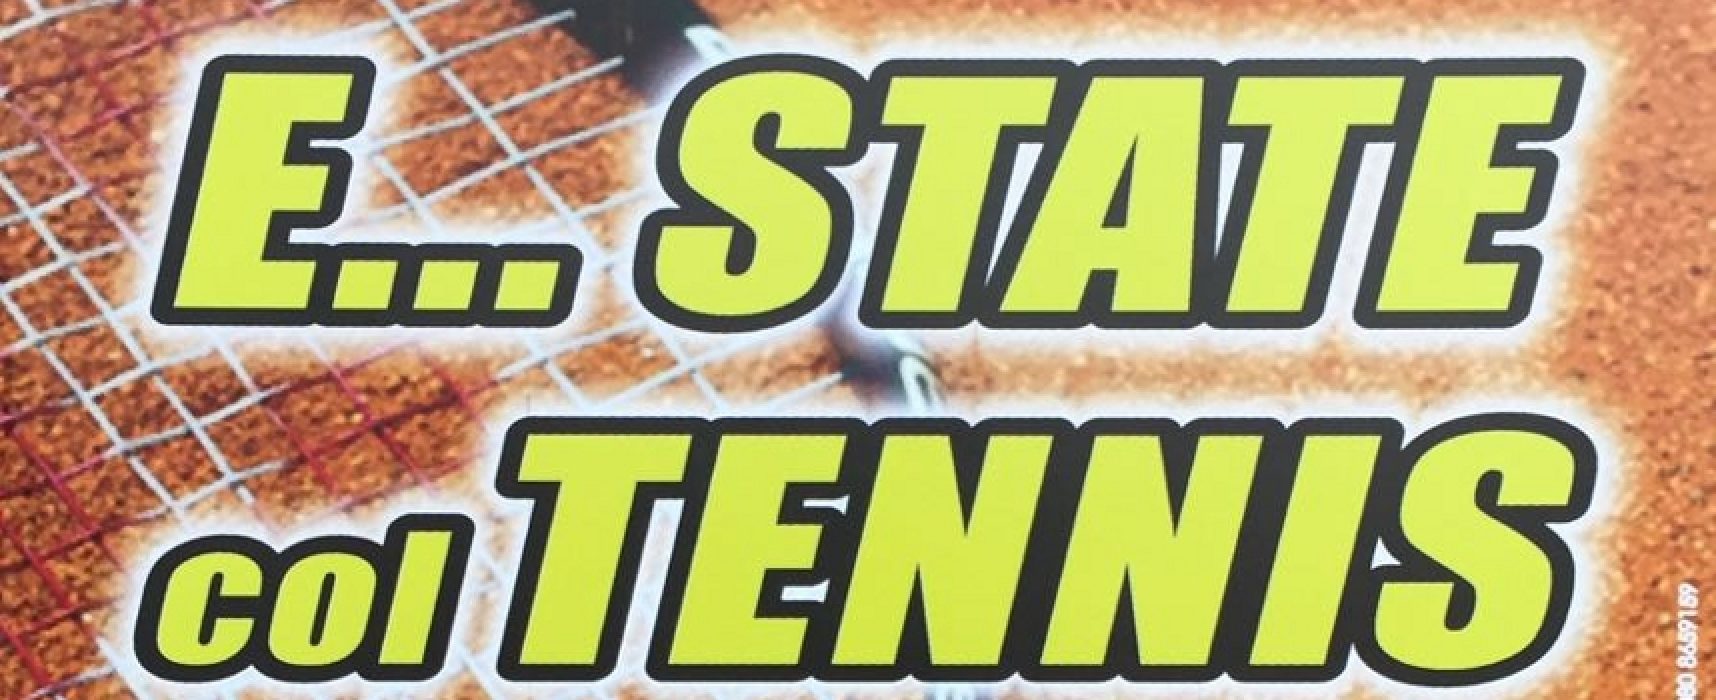 Sporting Tennis Club Bisceglie, ecco i corsi estivi per gli sportivi di tutte le età